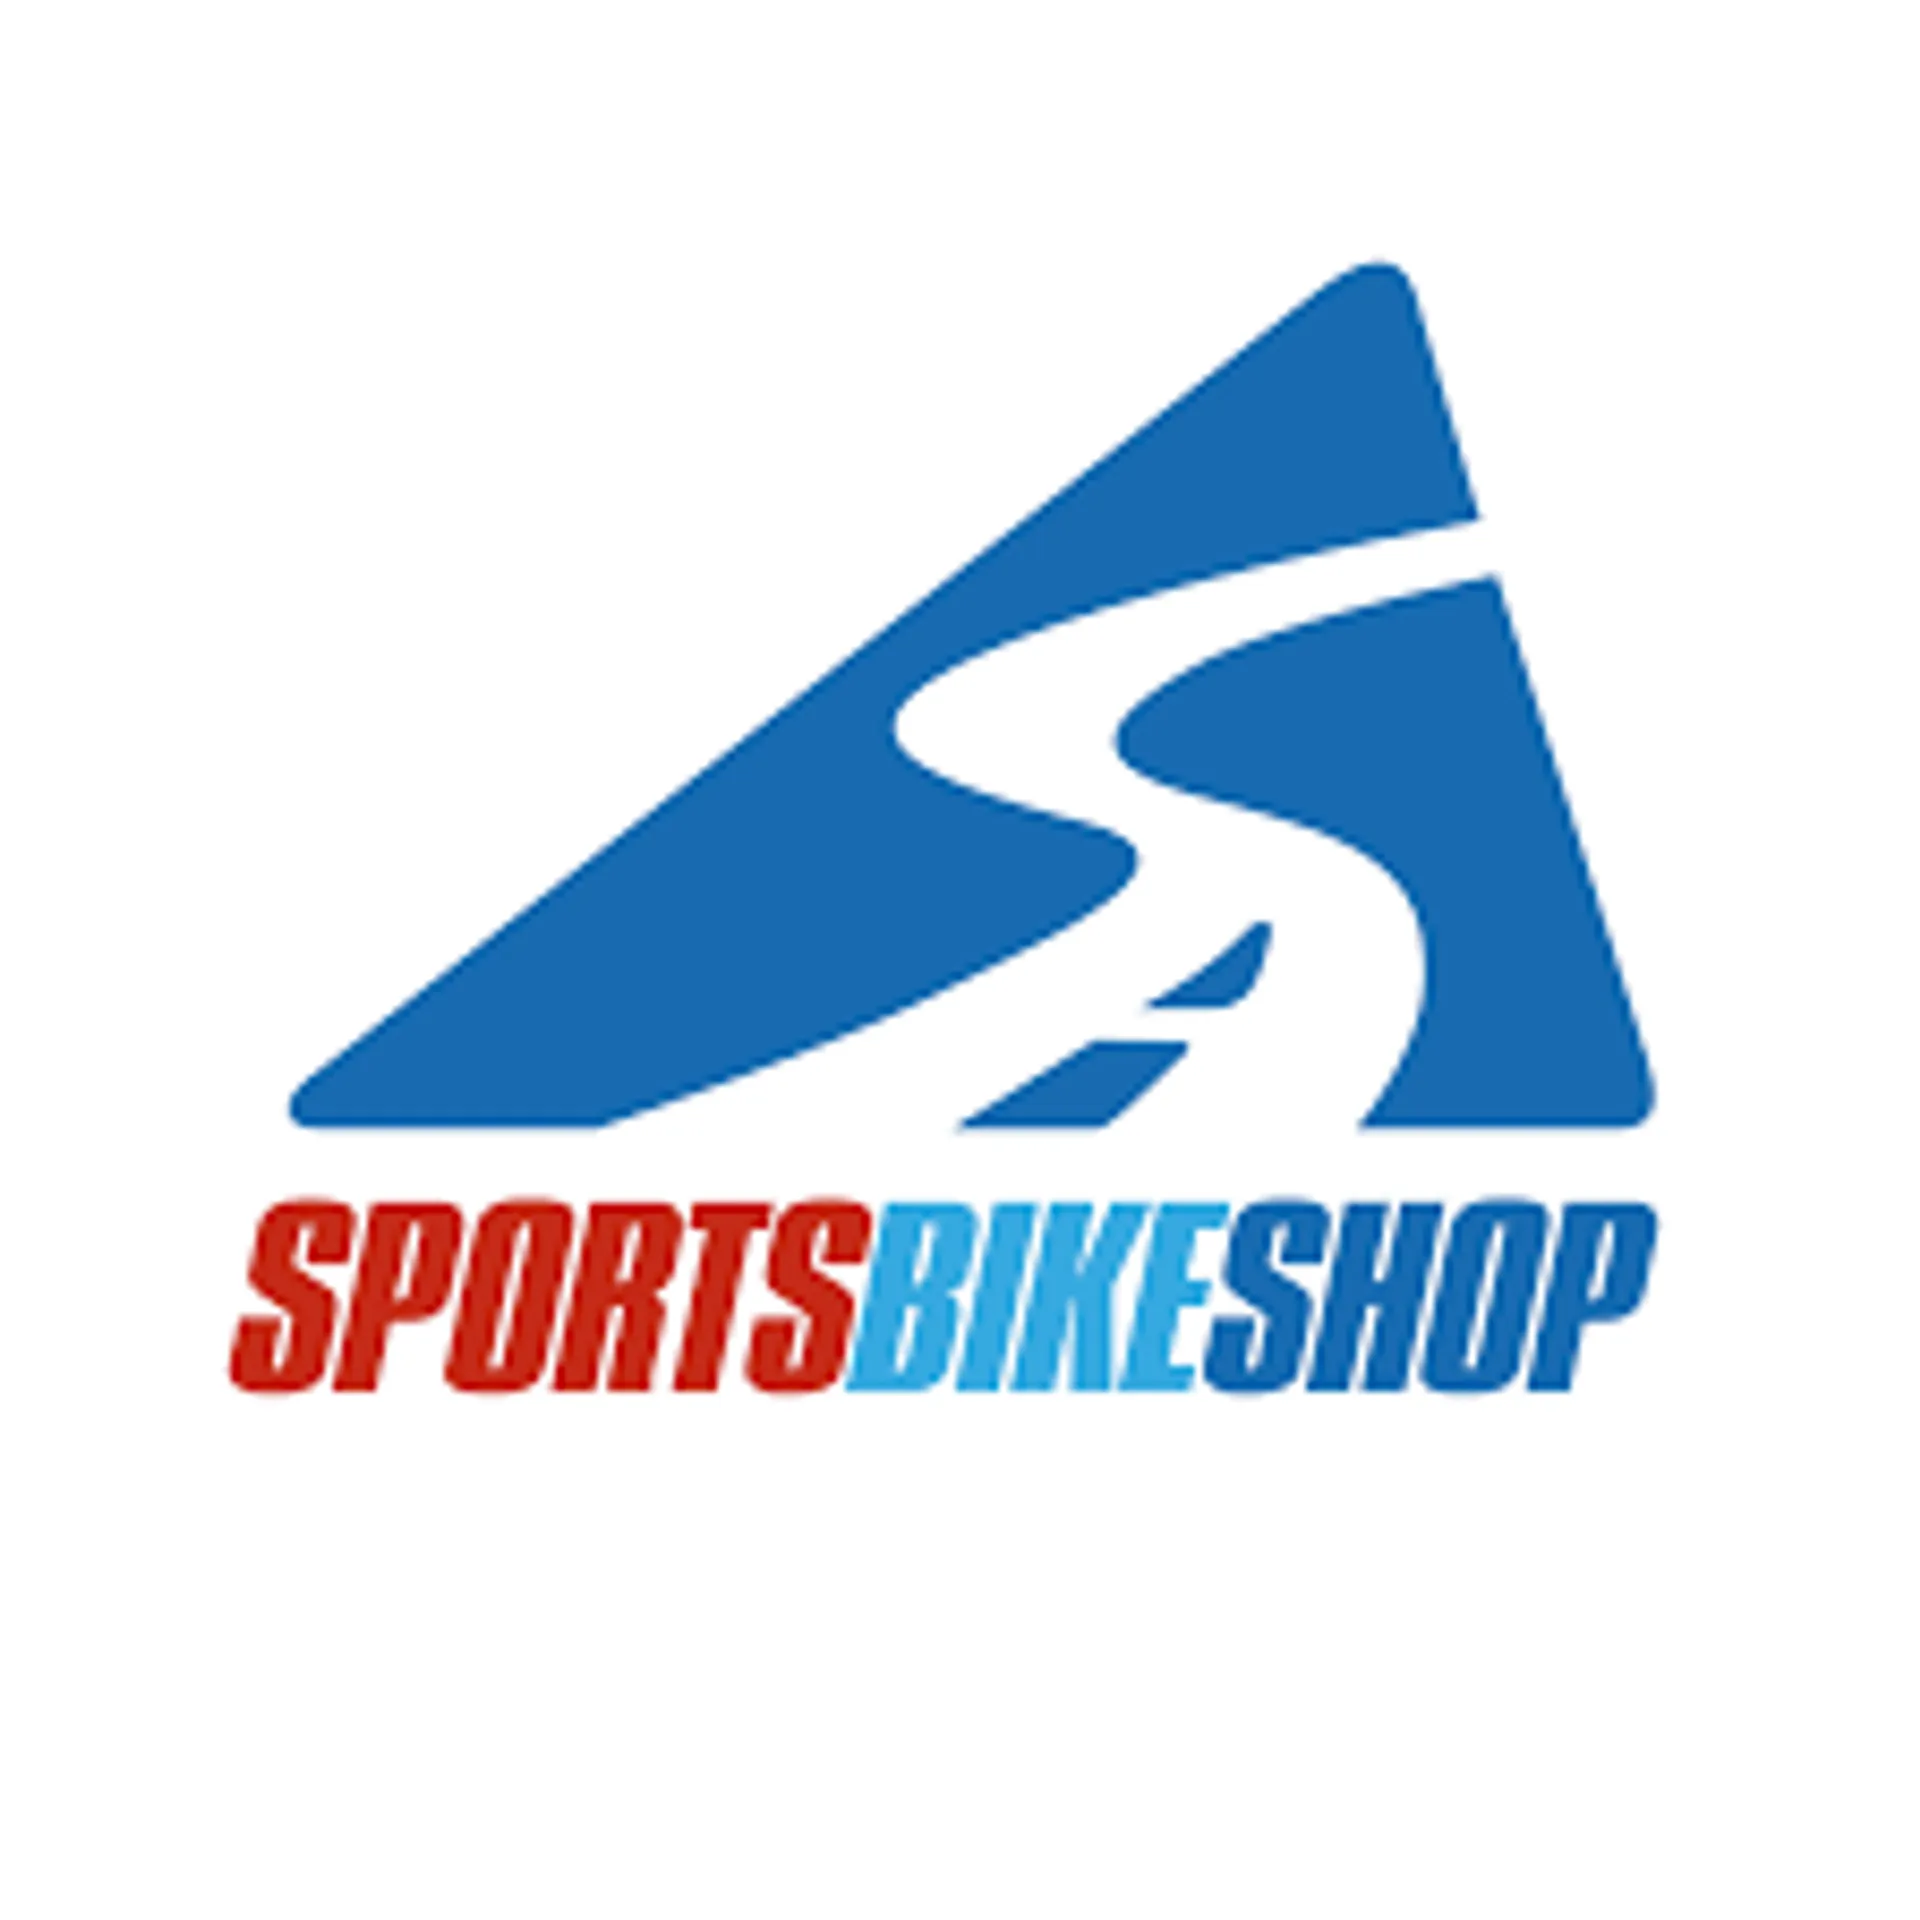 SPORTS BIKE SHOP logo